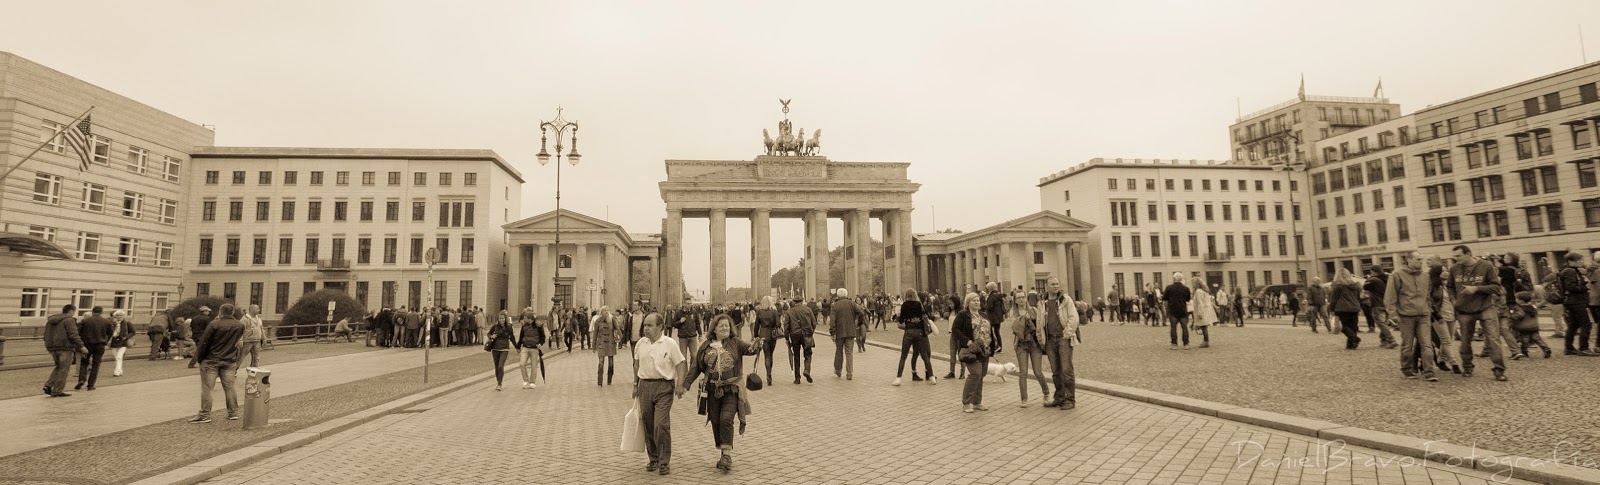 Berlín, Puerta de Branderburgo, puerta de Branderburgo, Branderburger Tor, cuadriga, Berlin